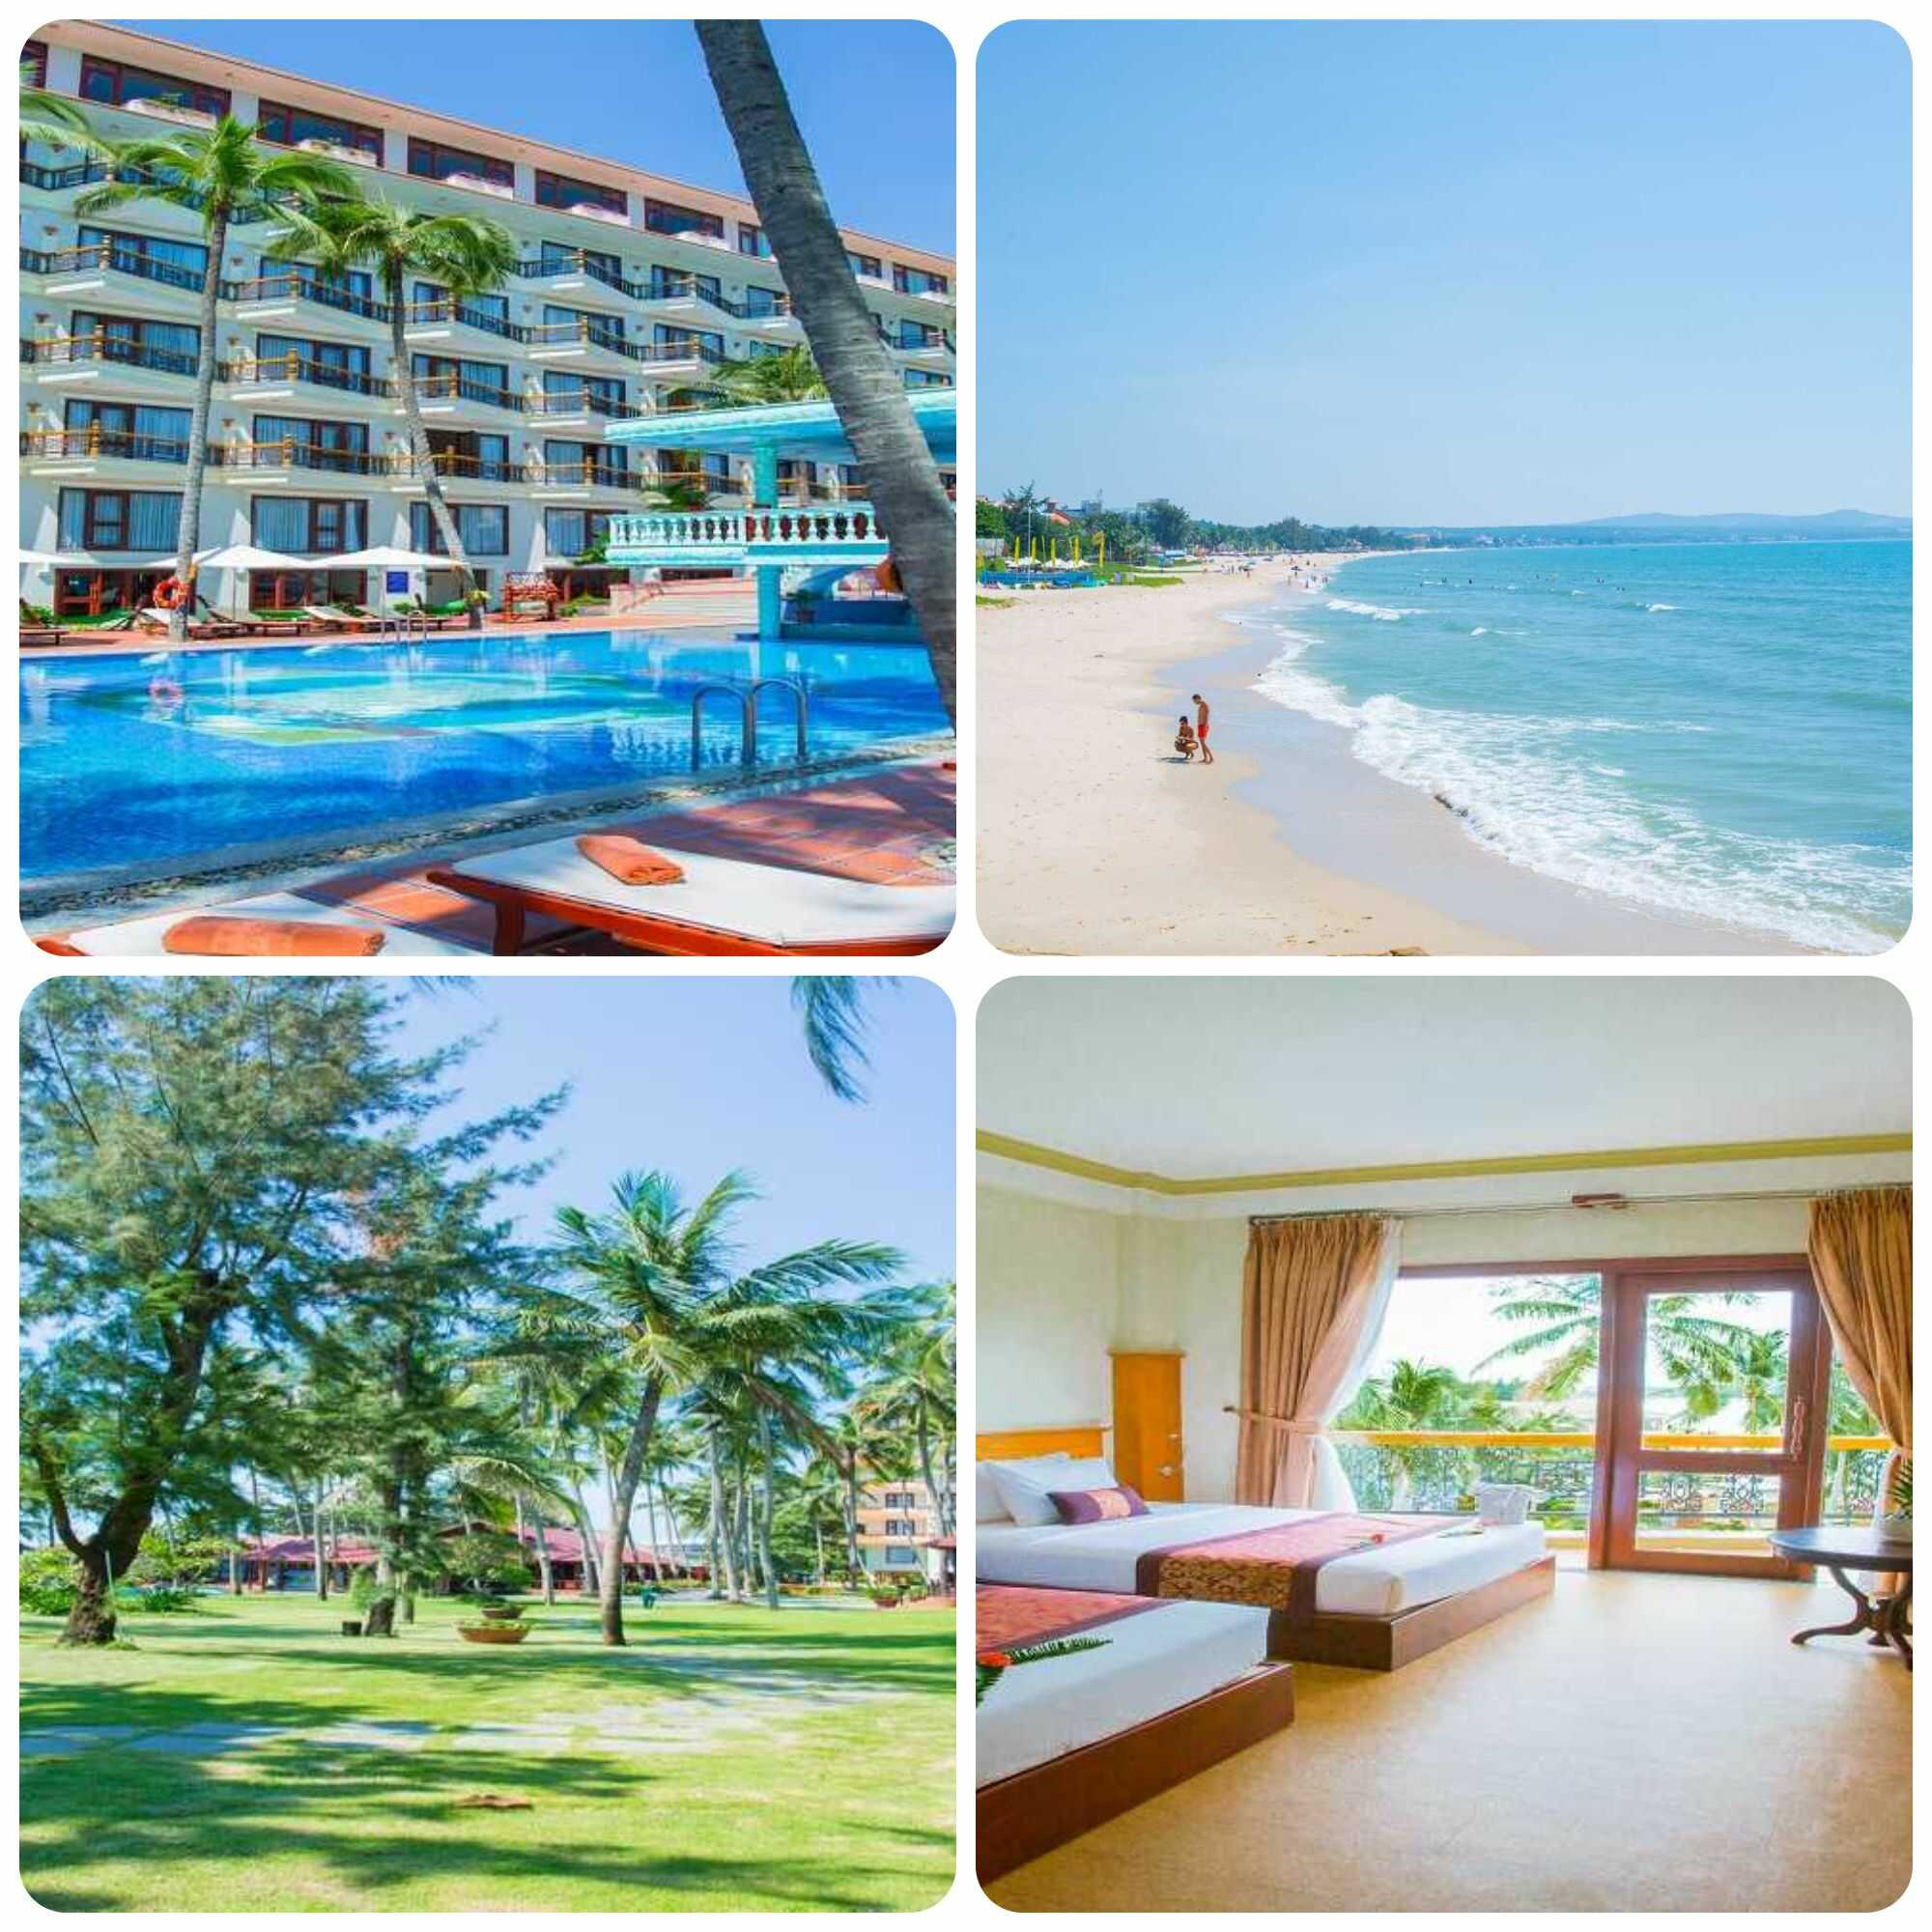 Cà Ty Mũi Né Resort - Khu nghỉ dưỡng chất lượng bên bãi biển